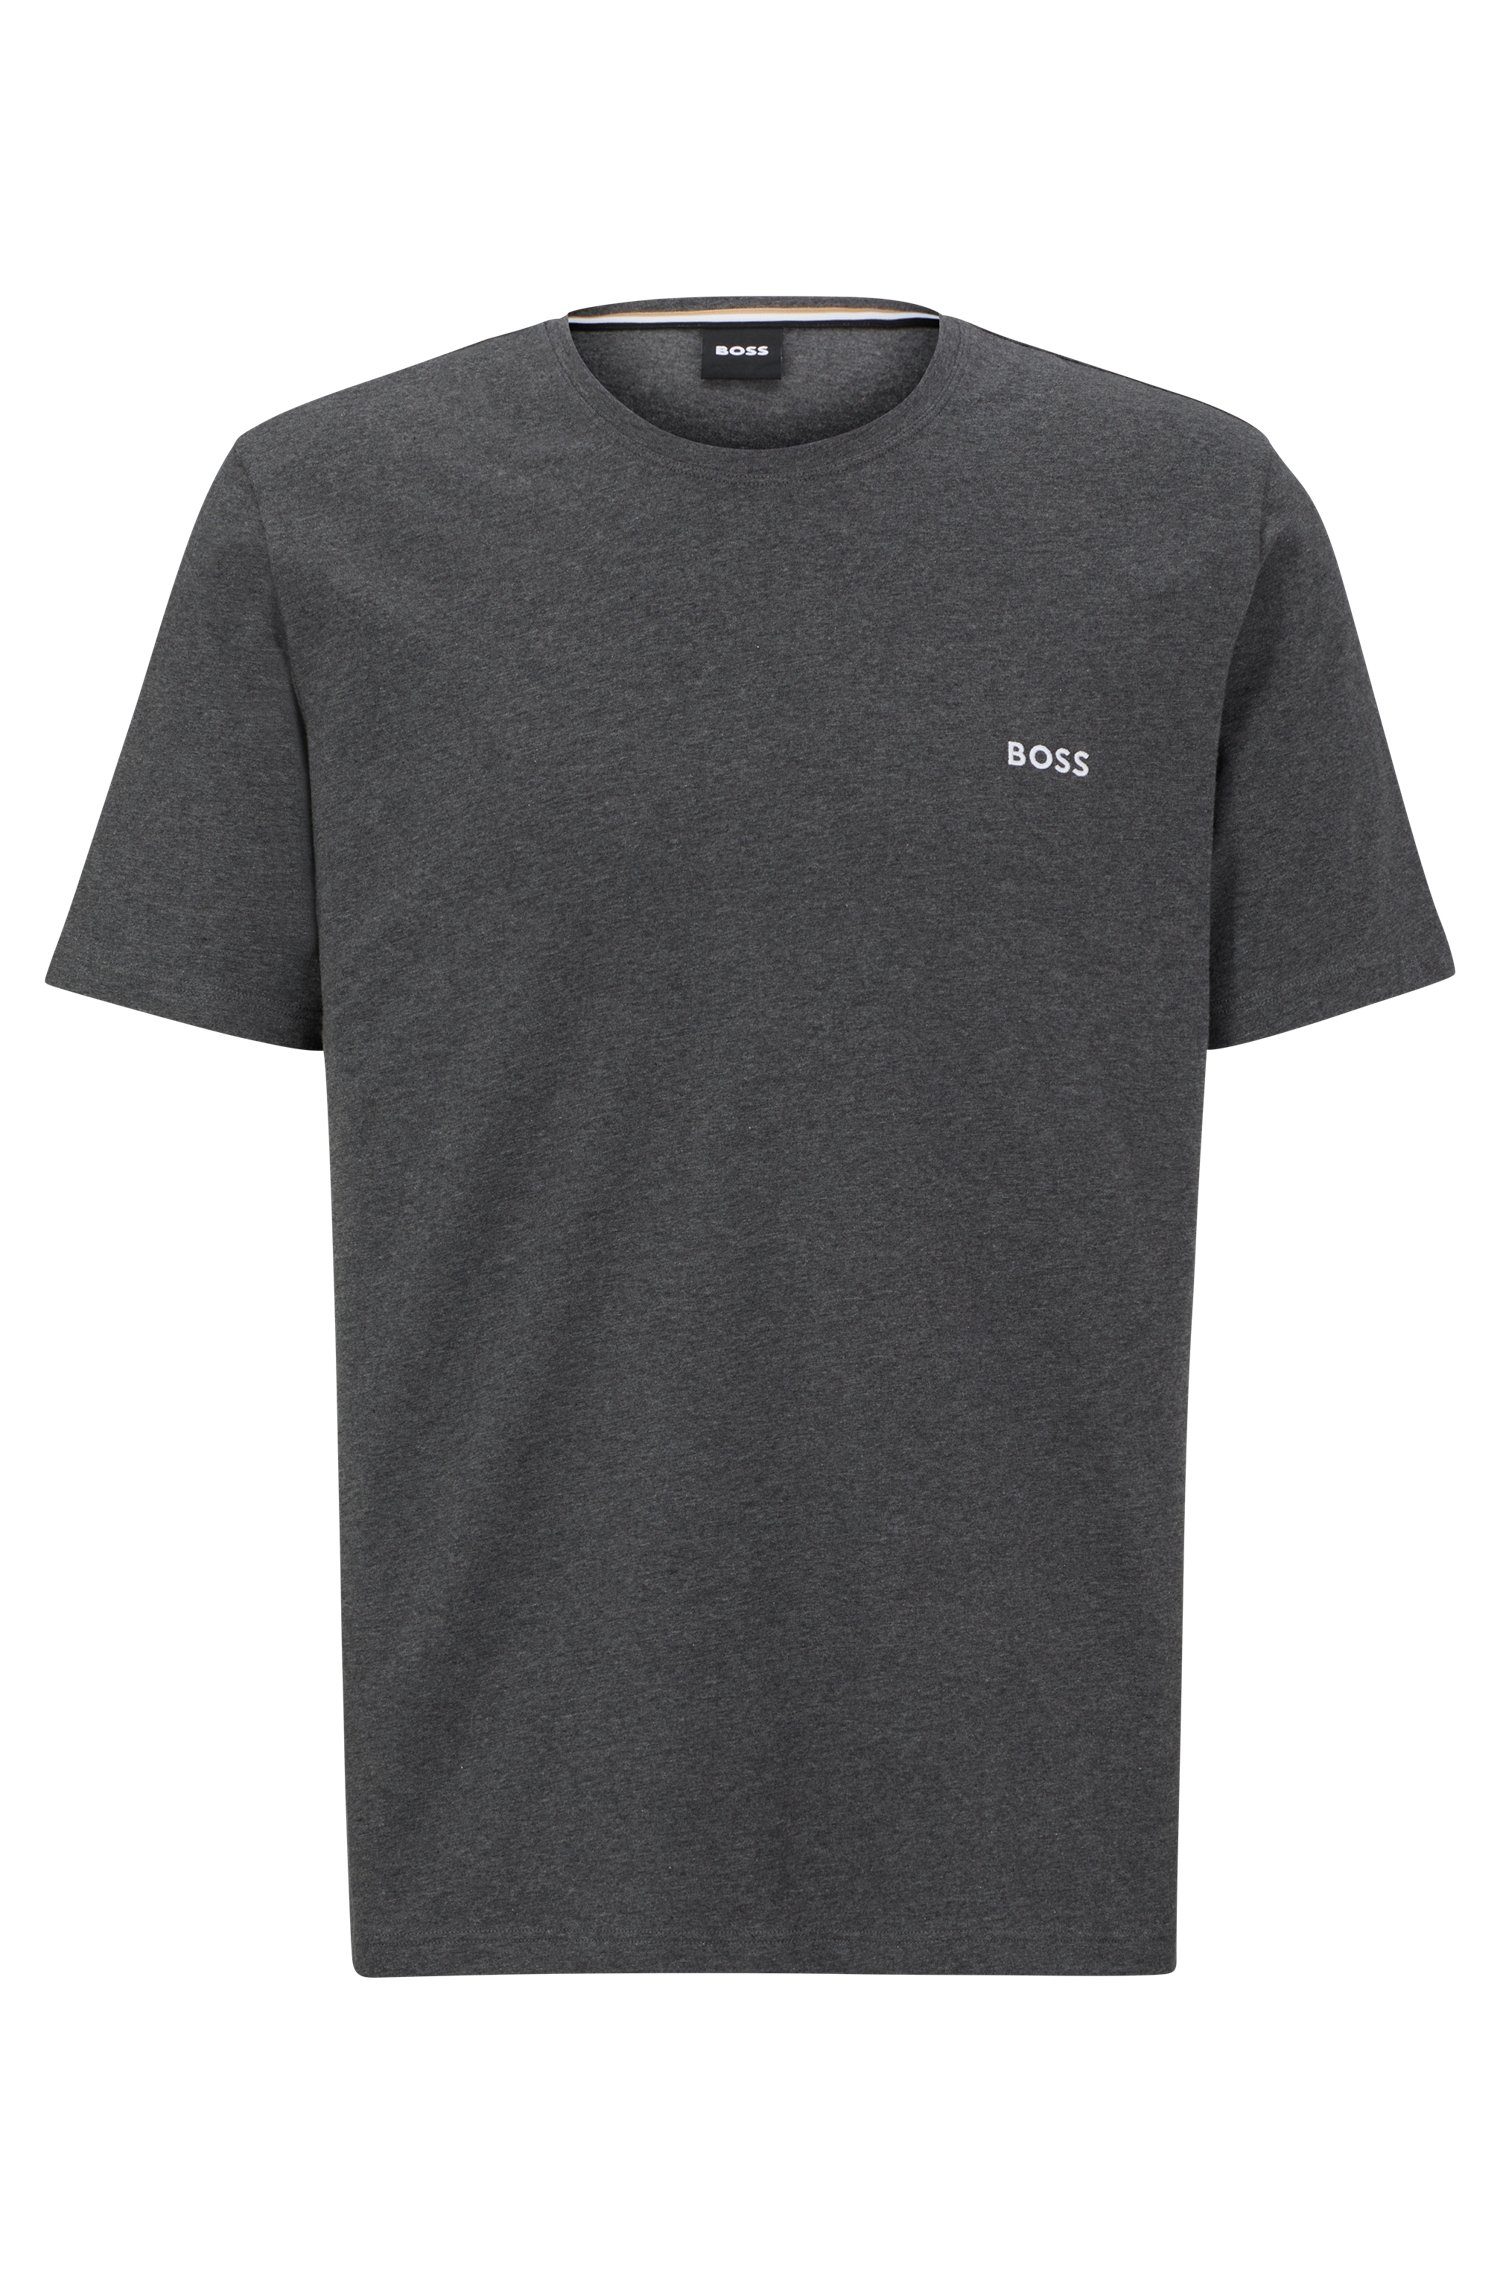 BOSS T-Shirt Mix&Match T-Shirt Mit R Stickerei auf Charcoal BOSS der Brust